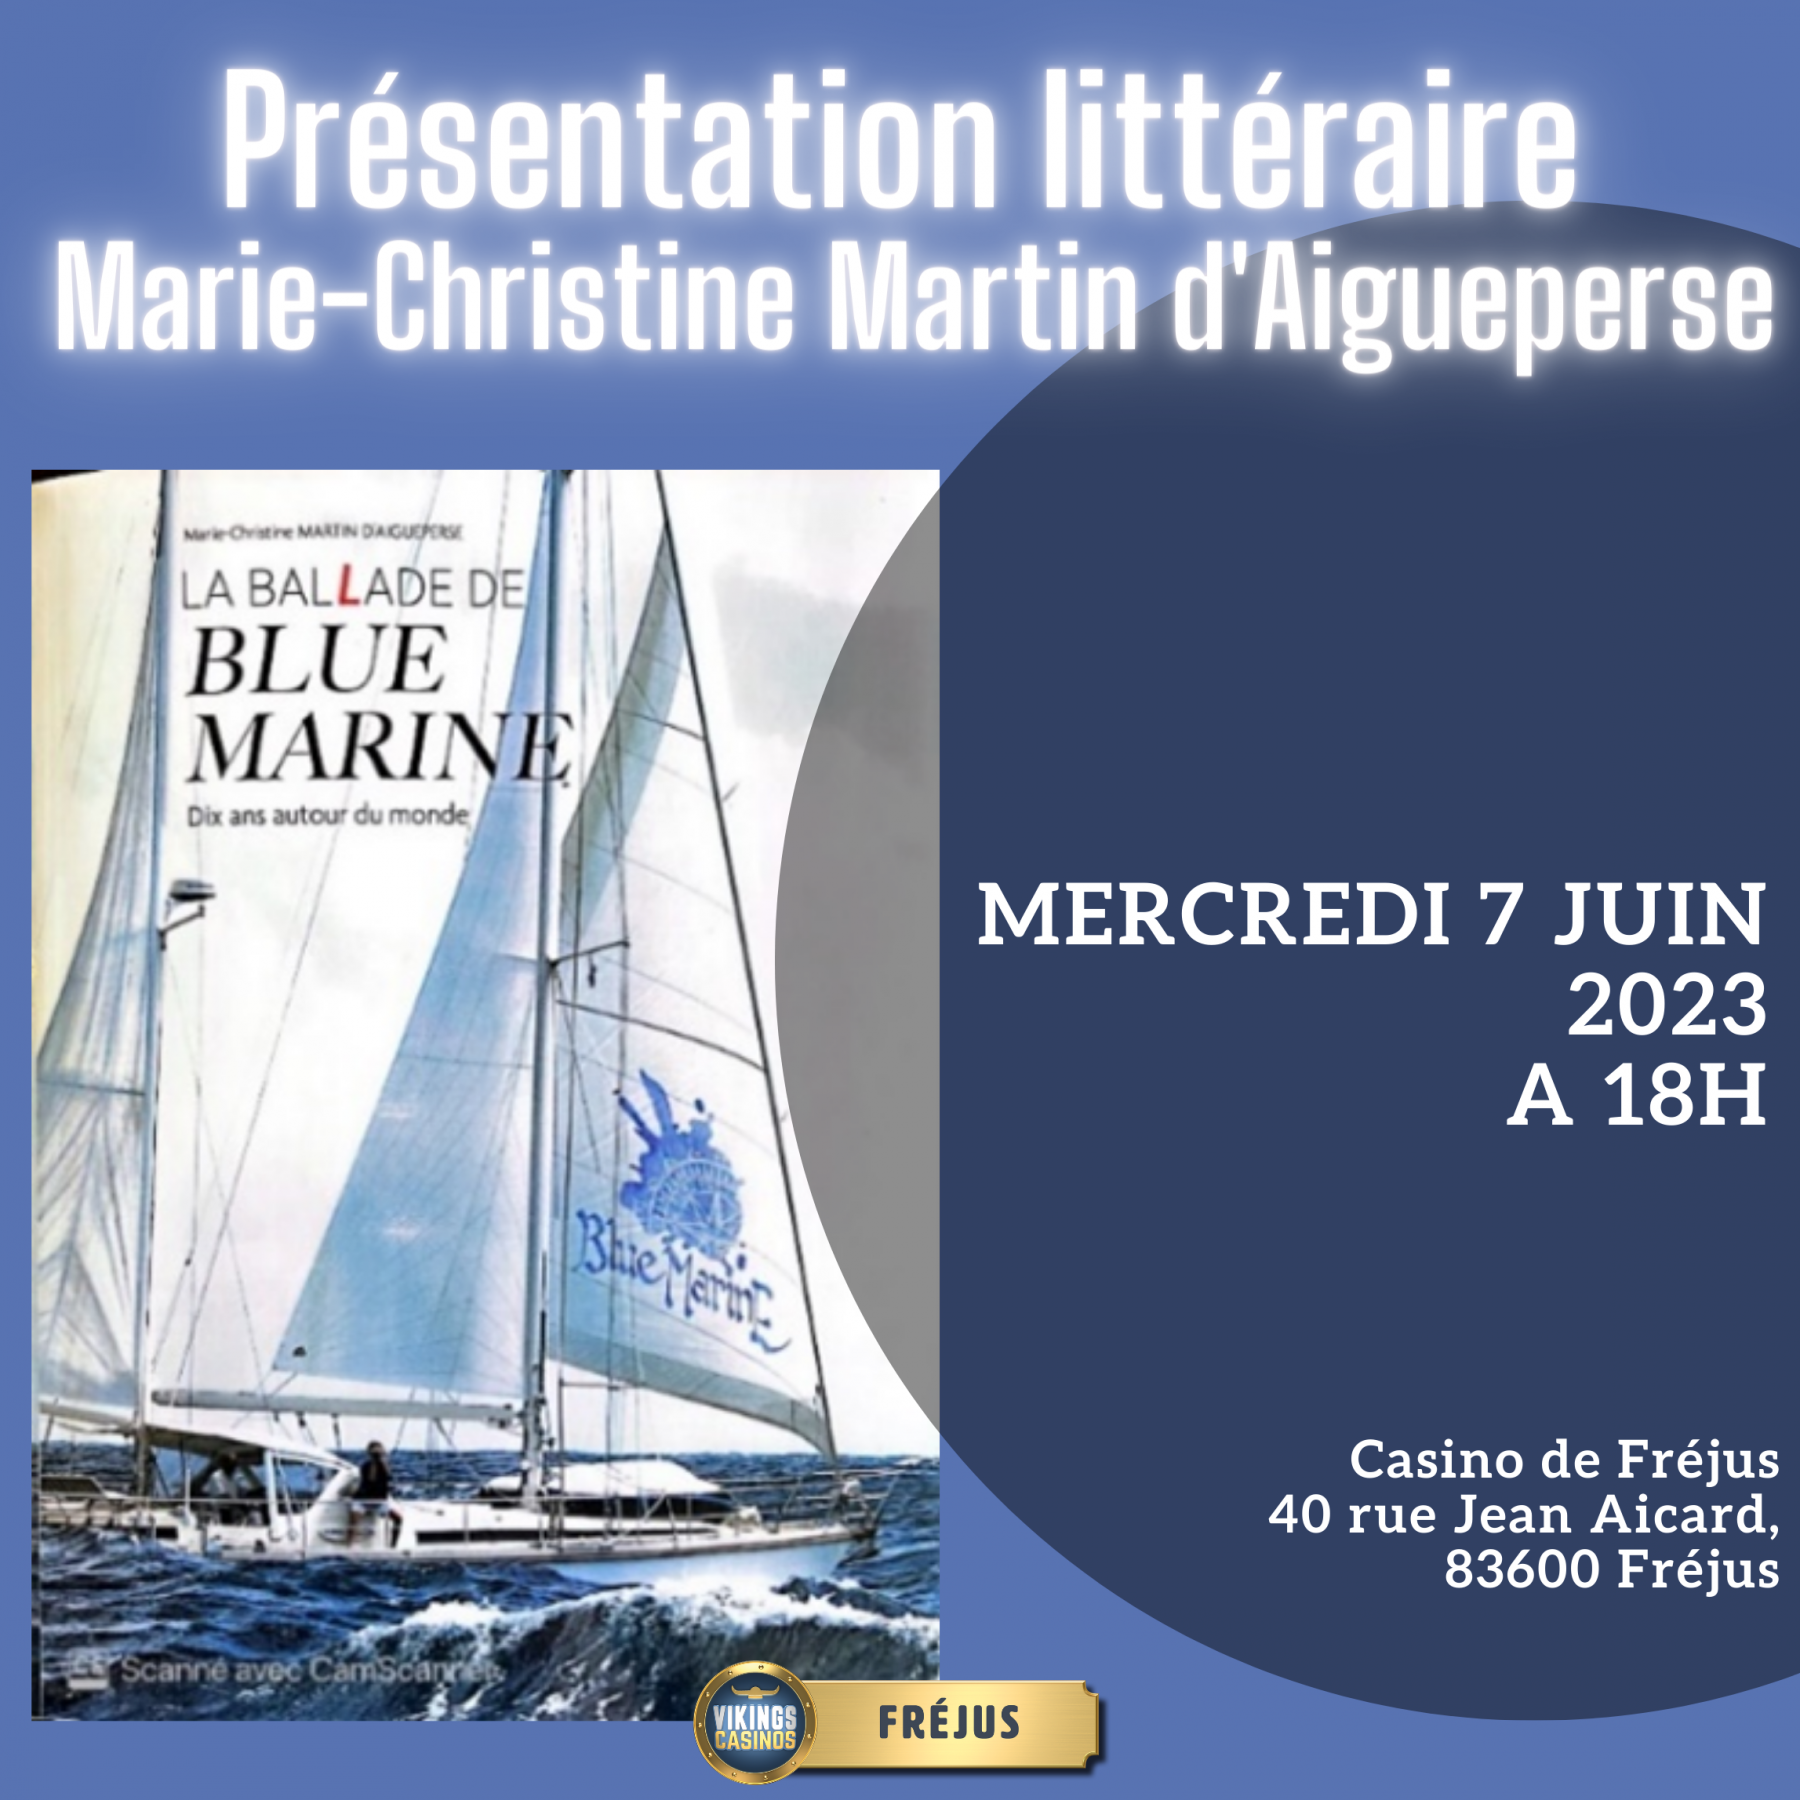 Présentation littéraire de Marie-Christine Martin D'Aigueperse